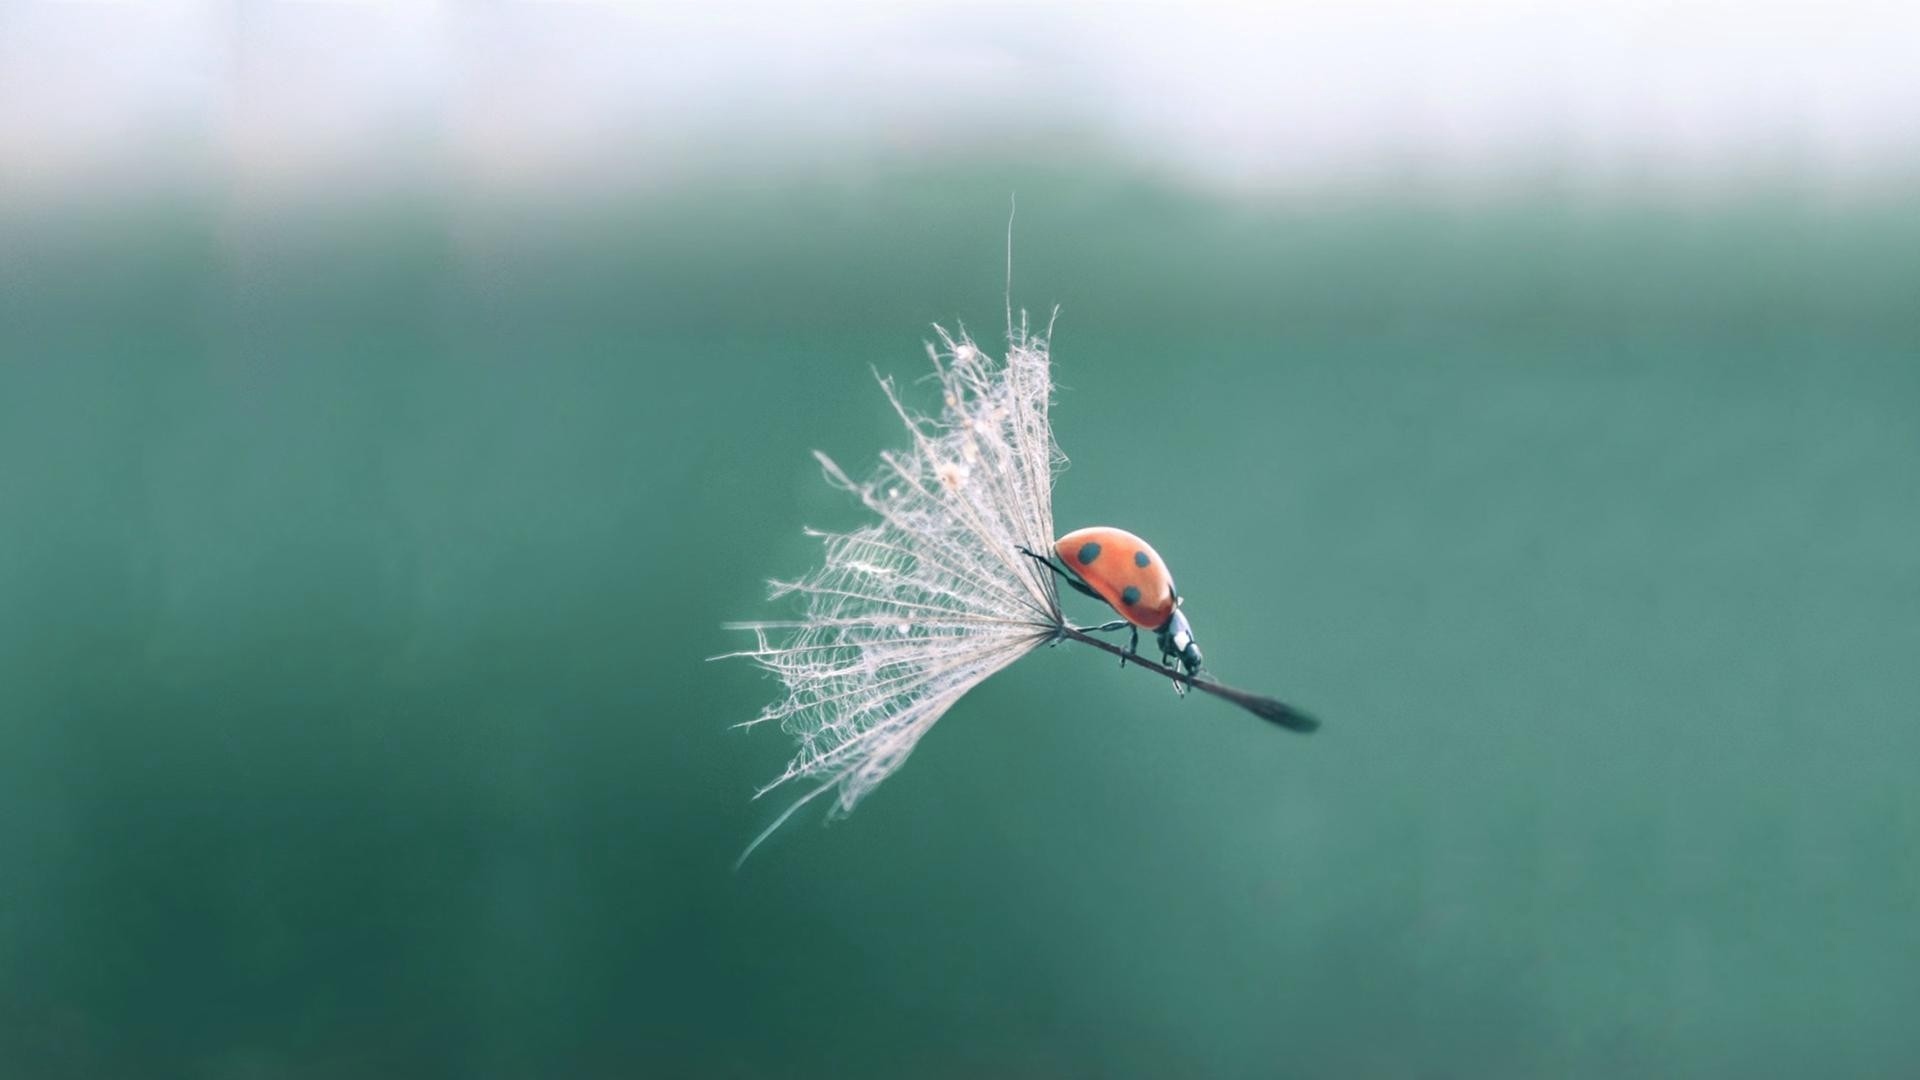 Ladybird Flying With Dandelion - Ladybug On A Dandelion , HD Wallpaper & Backgrounds